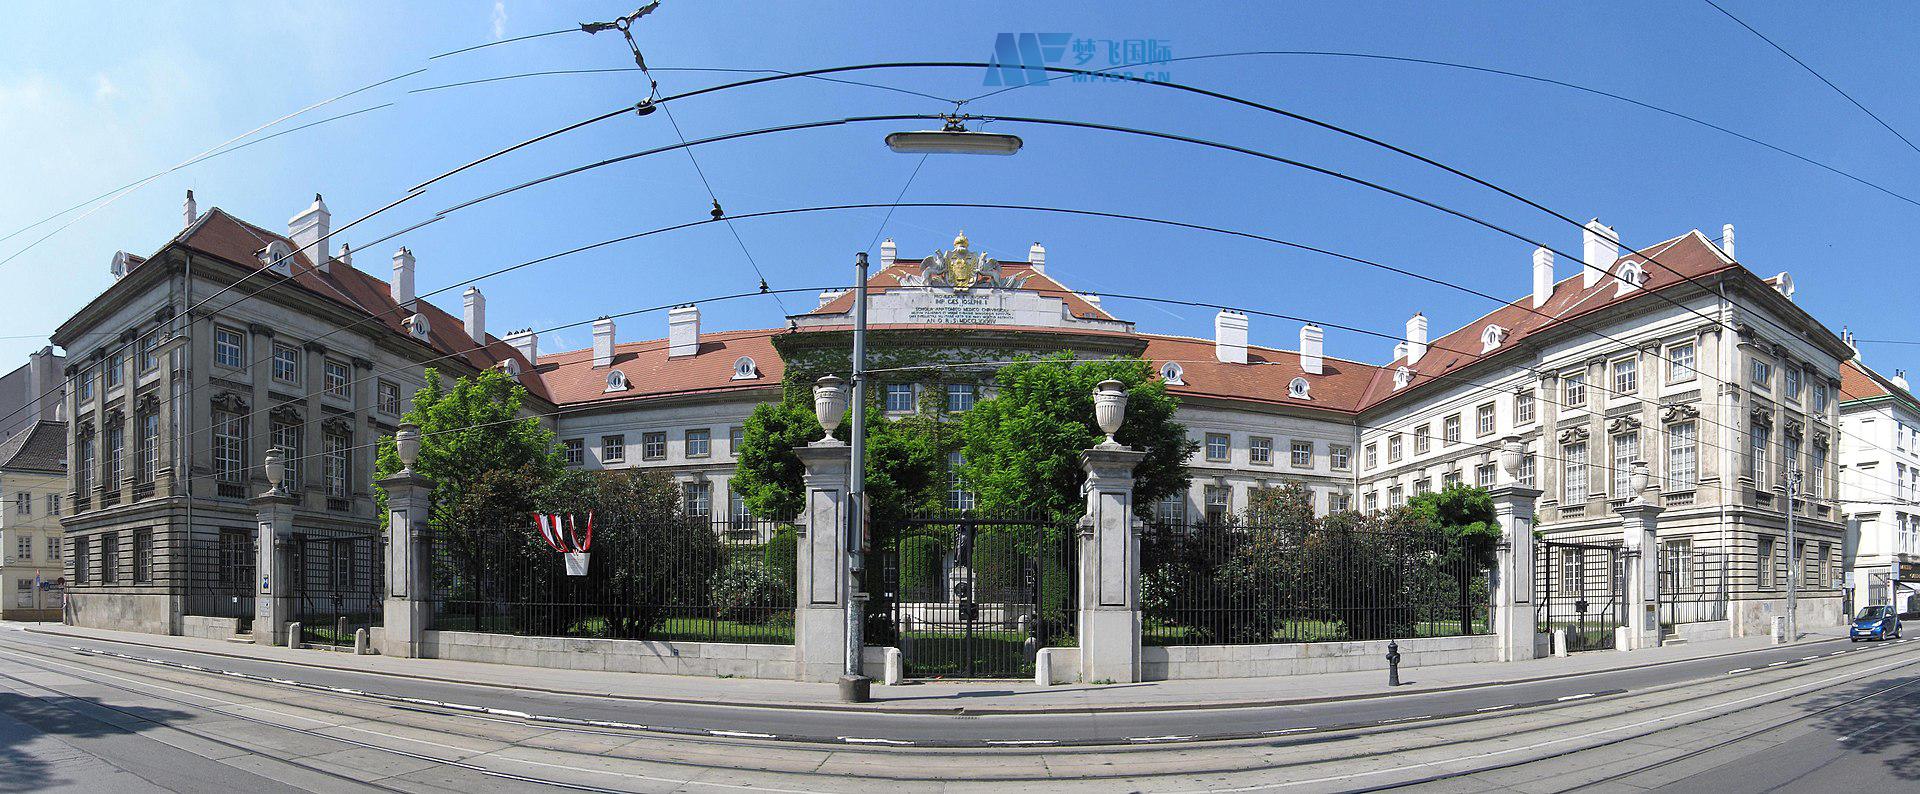 [奥地利院校] 维也纳医科大学 Medizinische Universität Wien